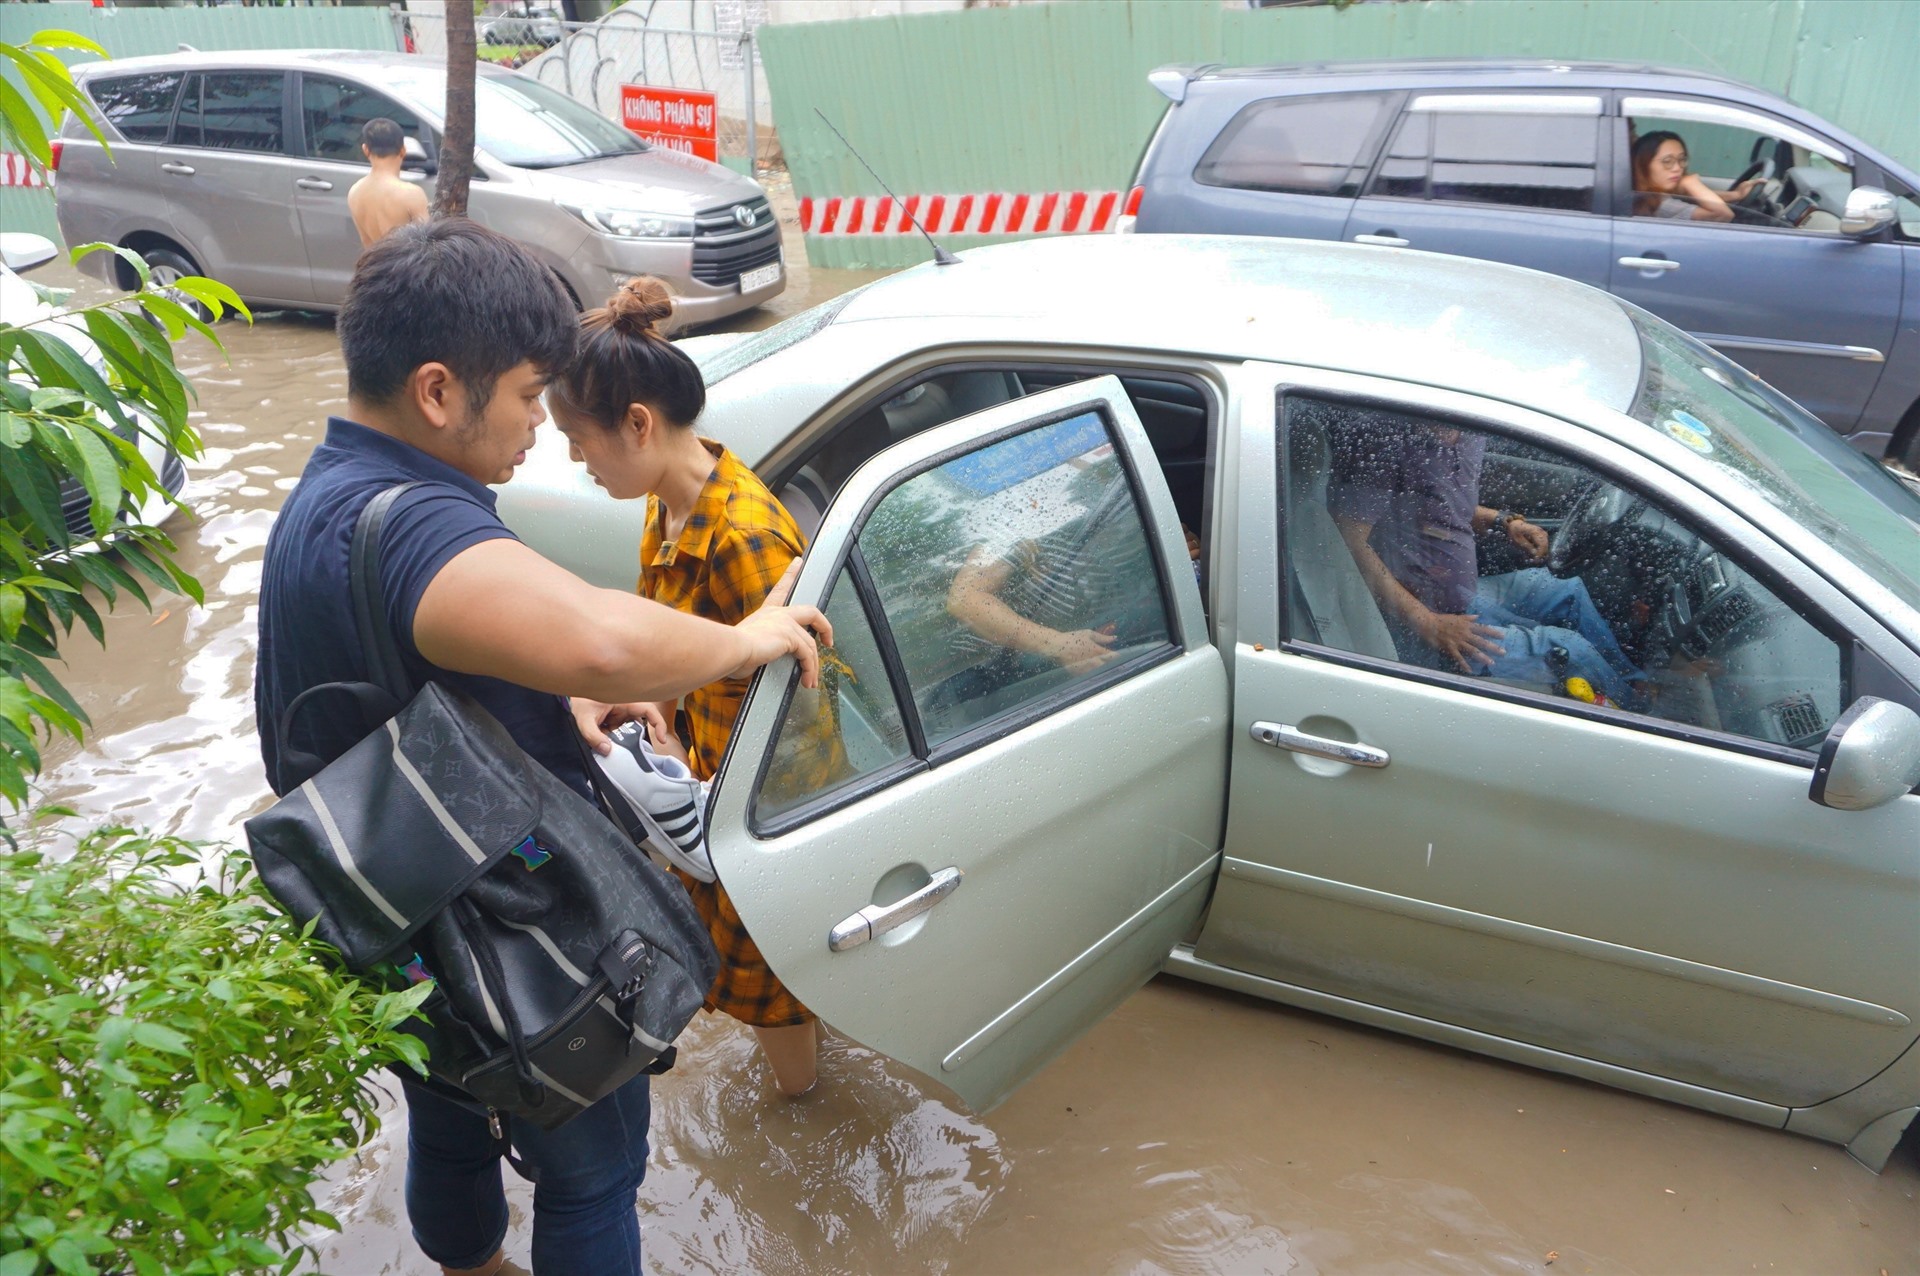 Một chiếc ô tô chết máy trên đường ngập Nguyễn Hữu Cảnh. Những người ngồi trên xe phải xuống xe bì bõm lội nước qua đoạn đường ngập.   Ảnh: Minh Quân